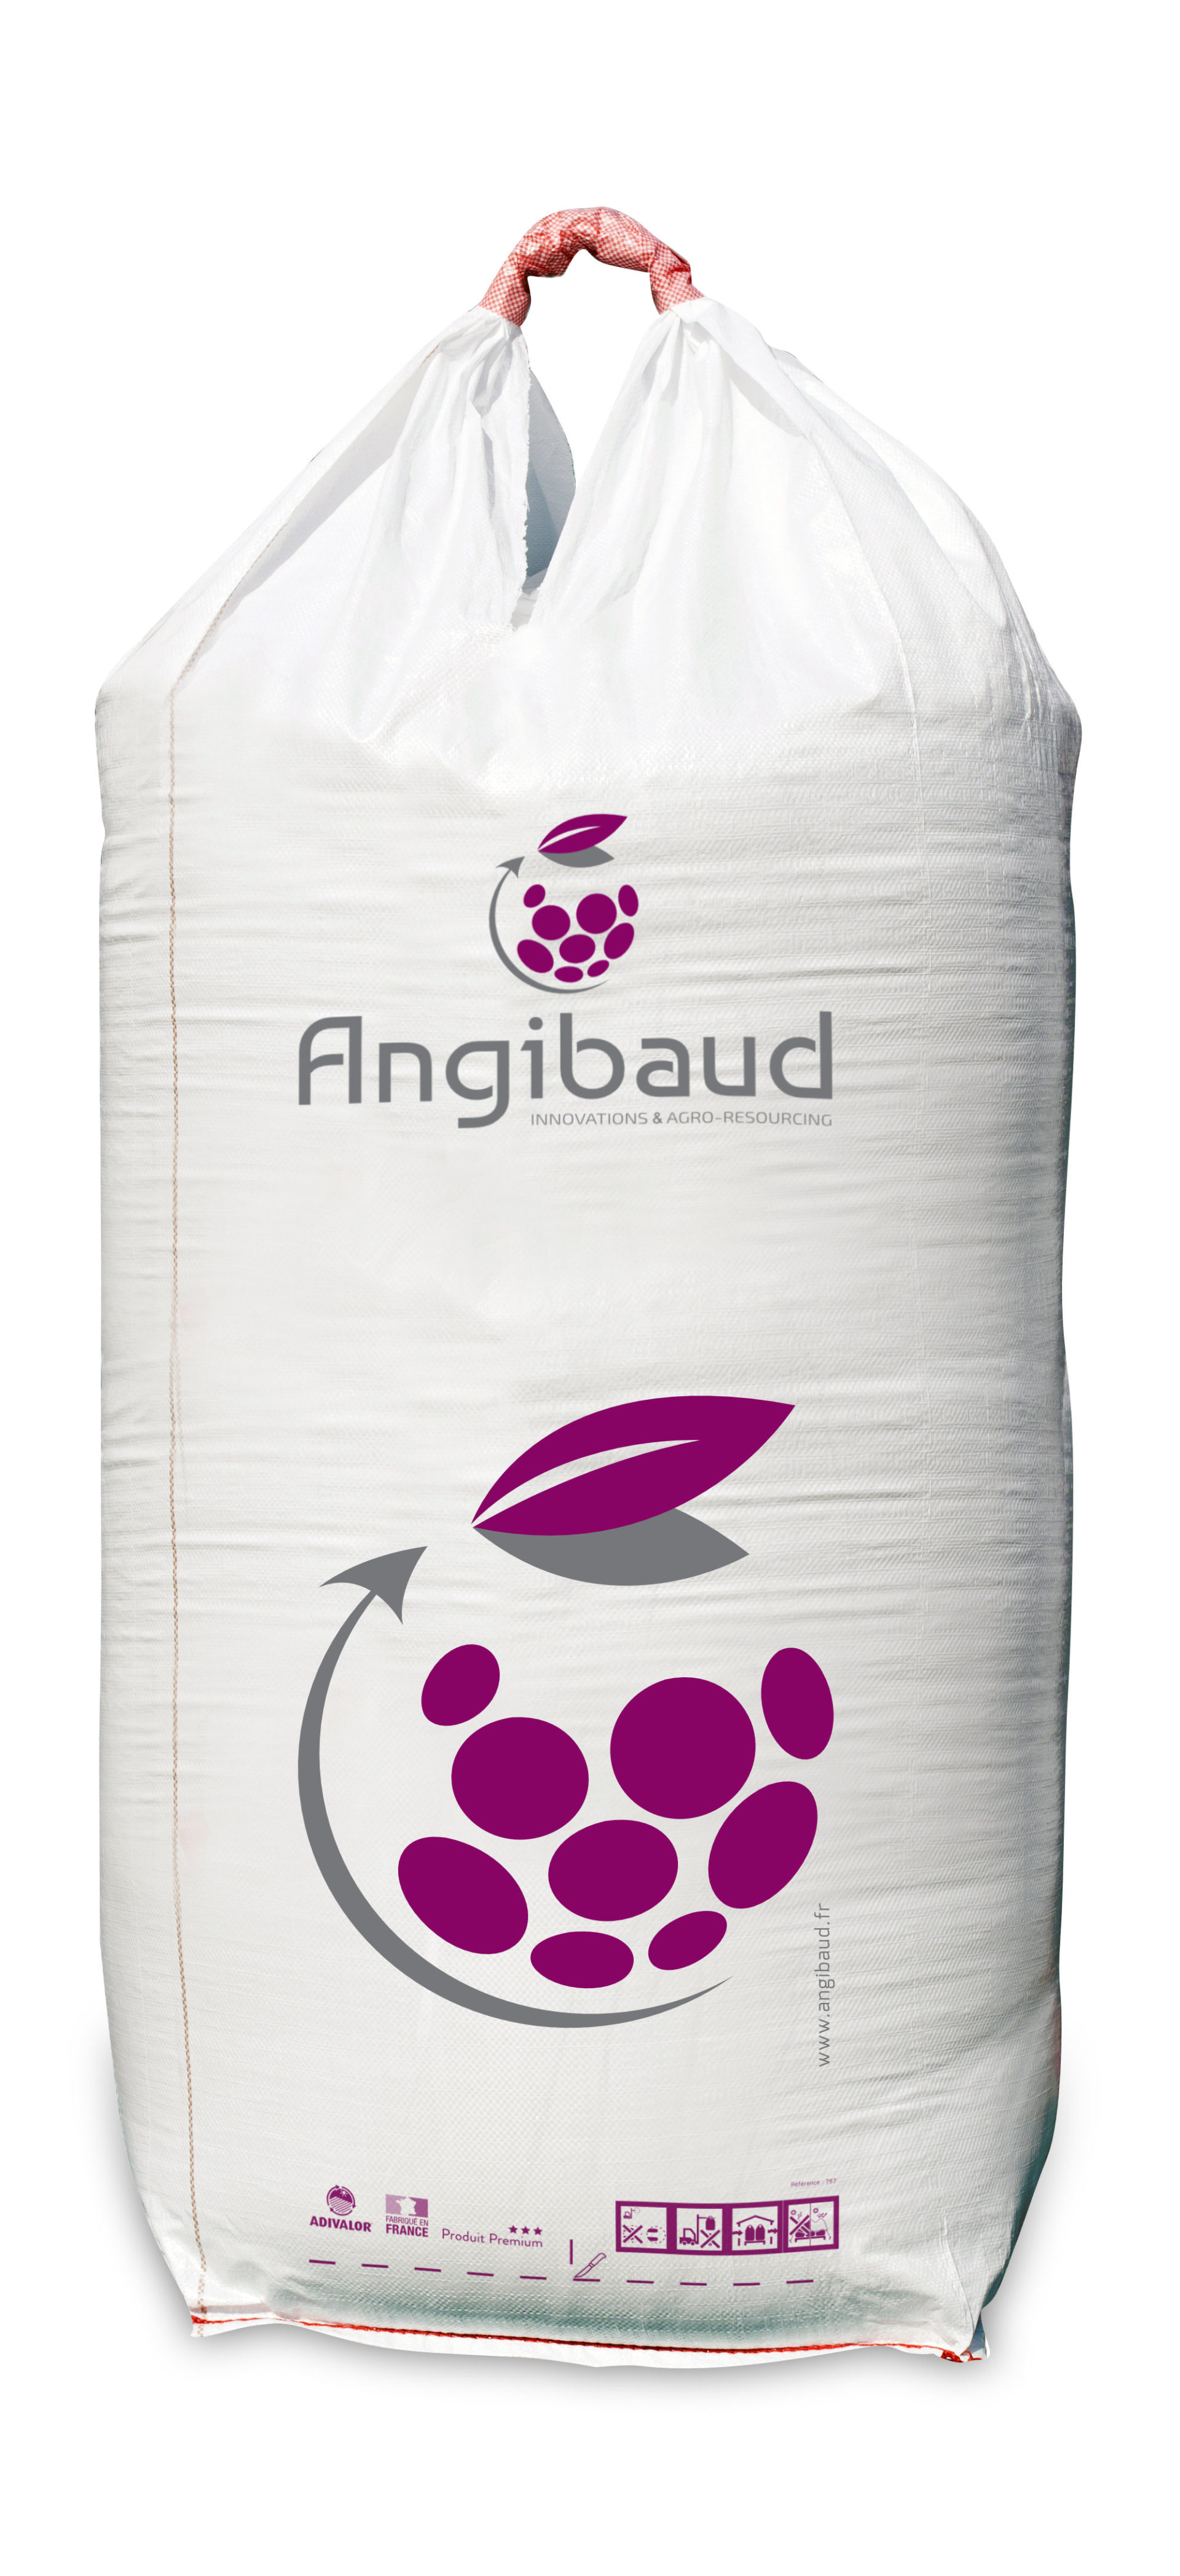 angibaud-big-bag-2020